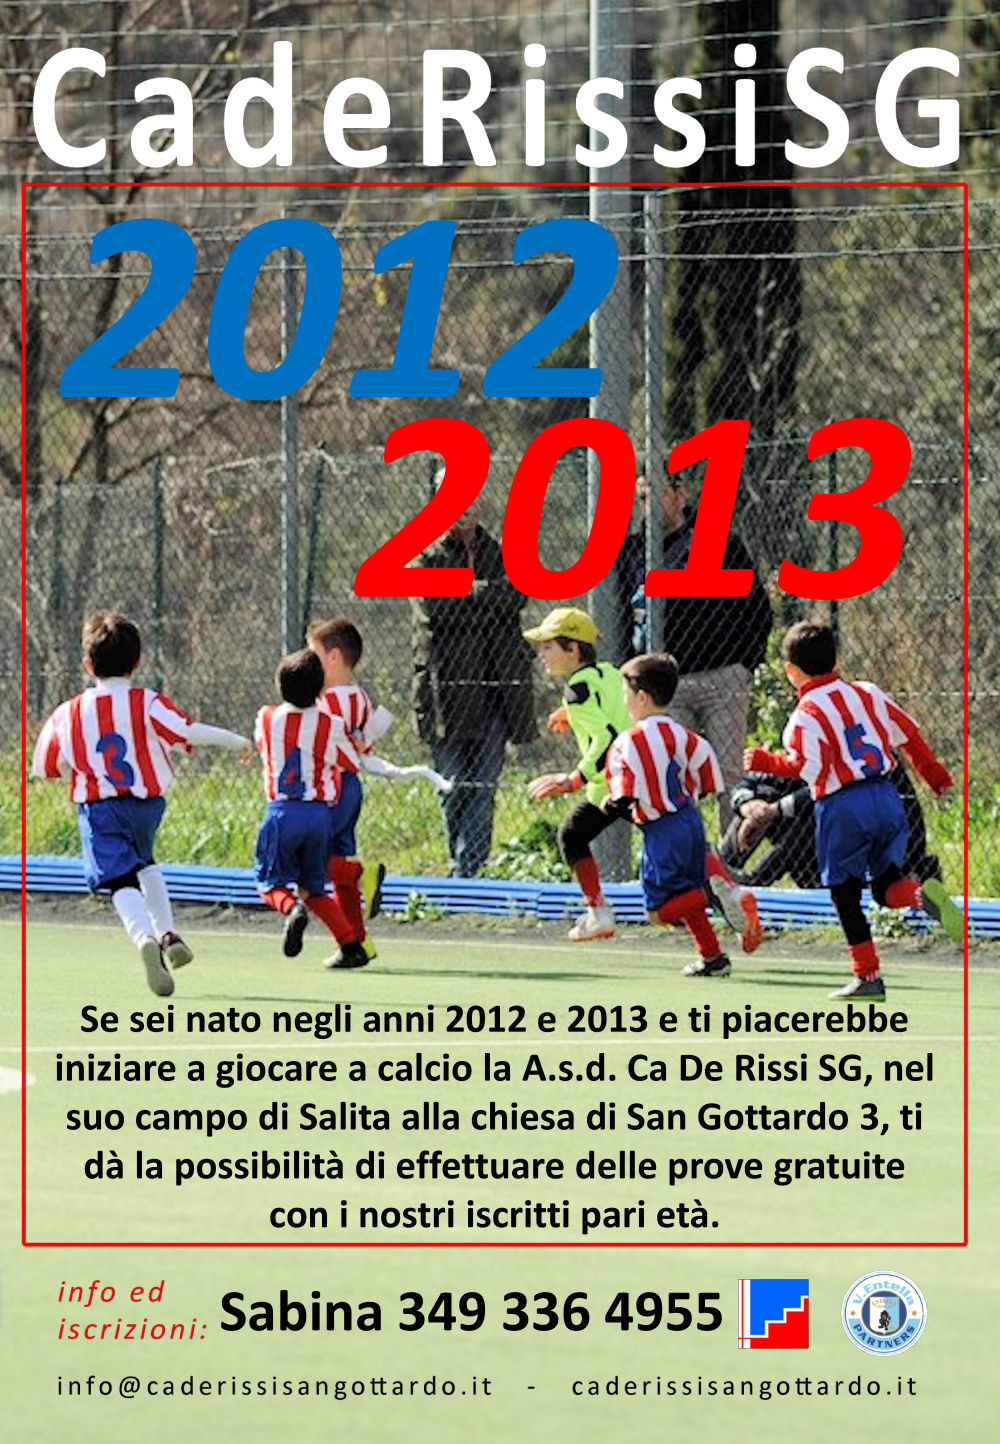 Invito 2012 2013